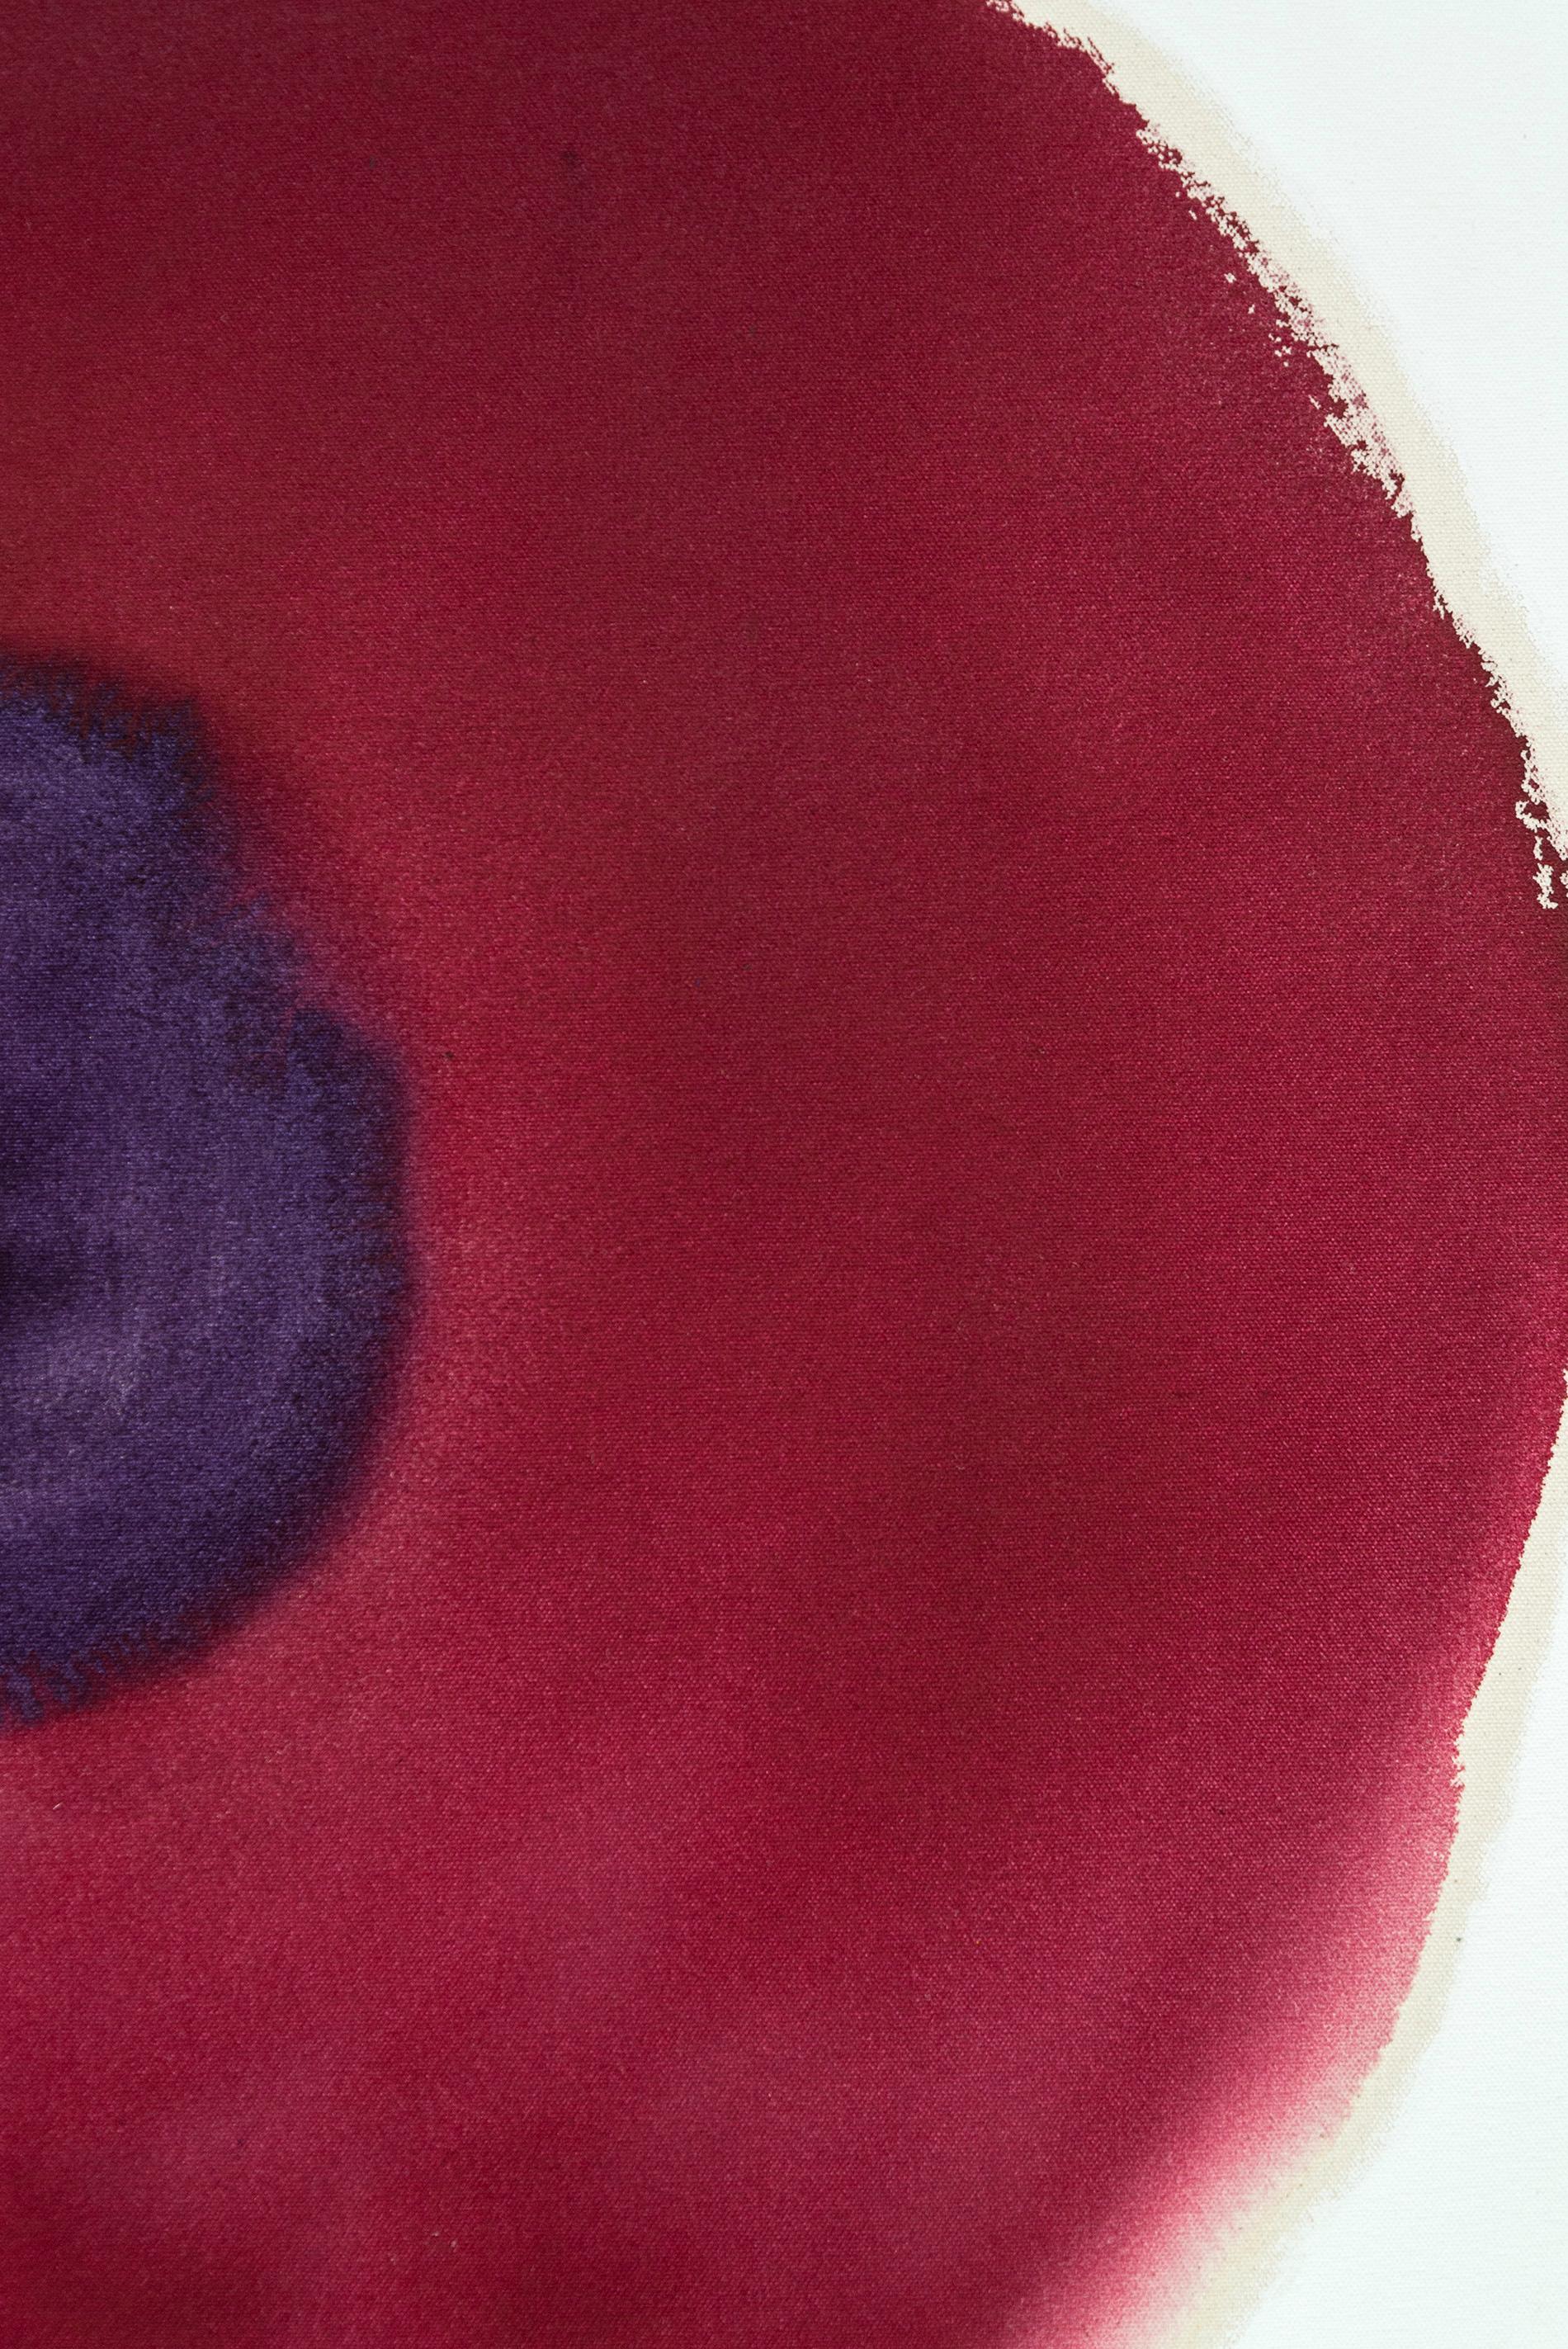 Samt Mohnblumen - farbenfroher, ausdrucksstarker, minimalistischer, abstrakter Blumen, Acryl auf Leinwand (Rot), Still-Life Painting, von Pat Service